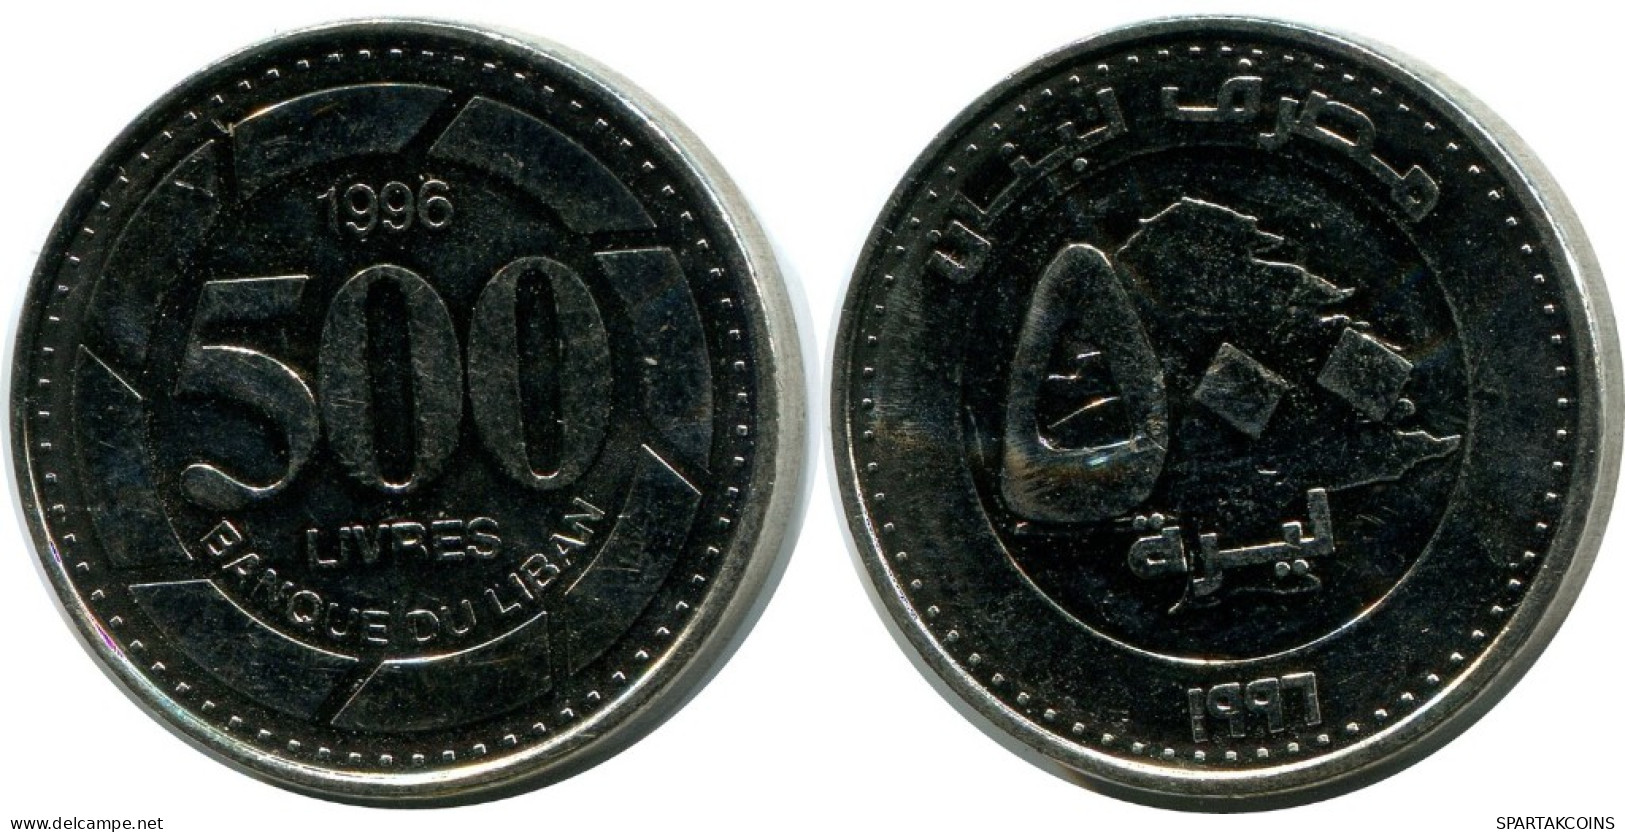 500 LIVRES 1996 LEBANON Coin #AH746.U.A - Libano